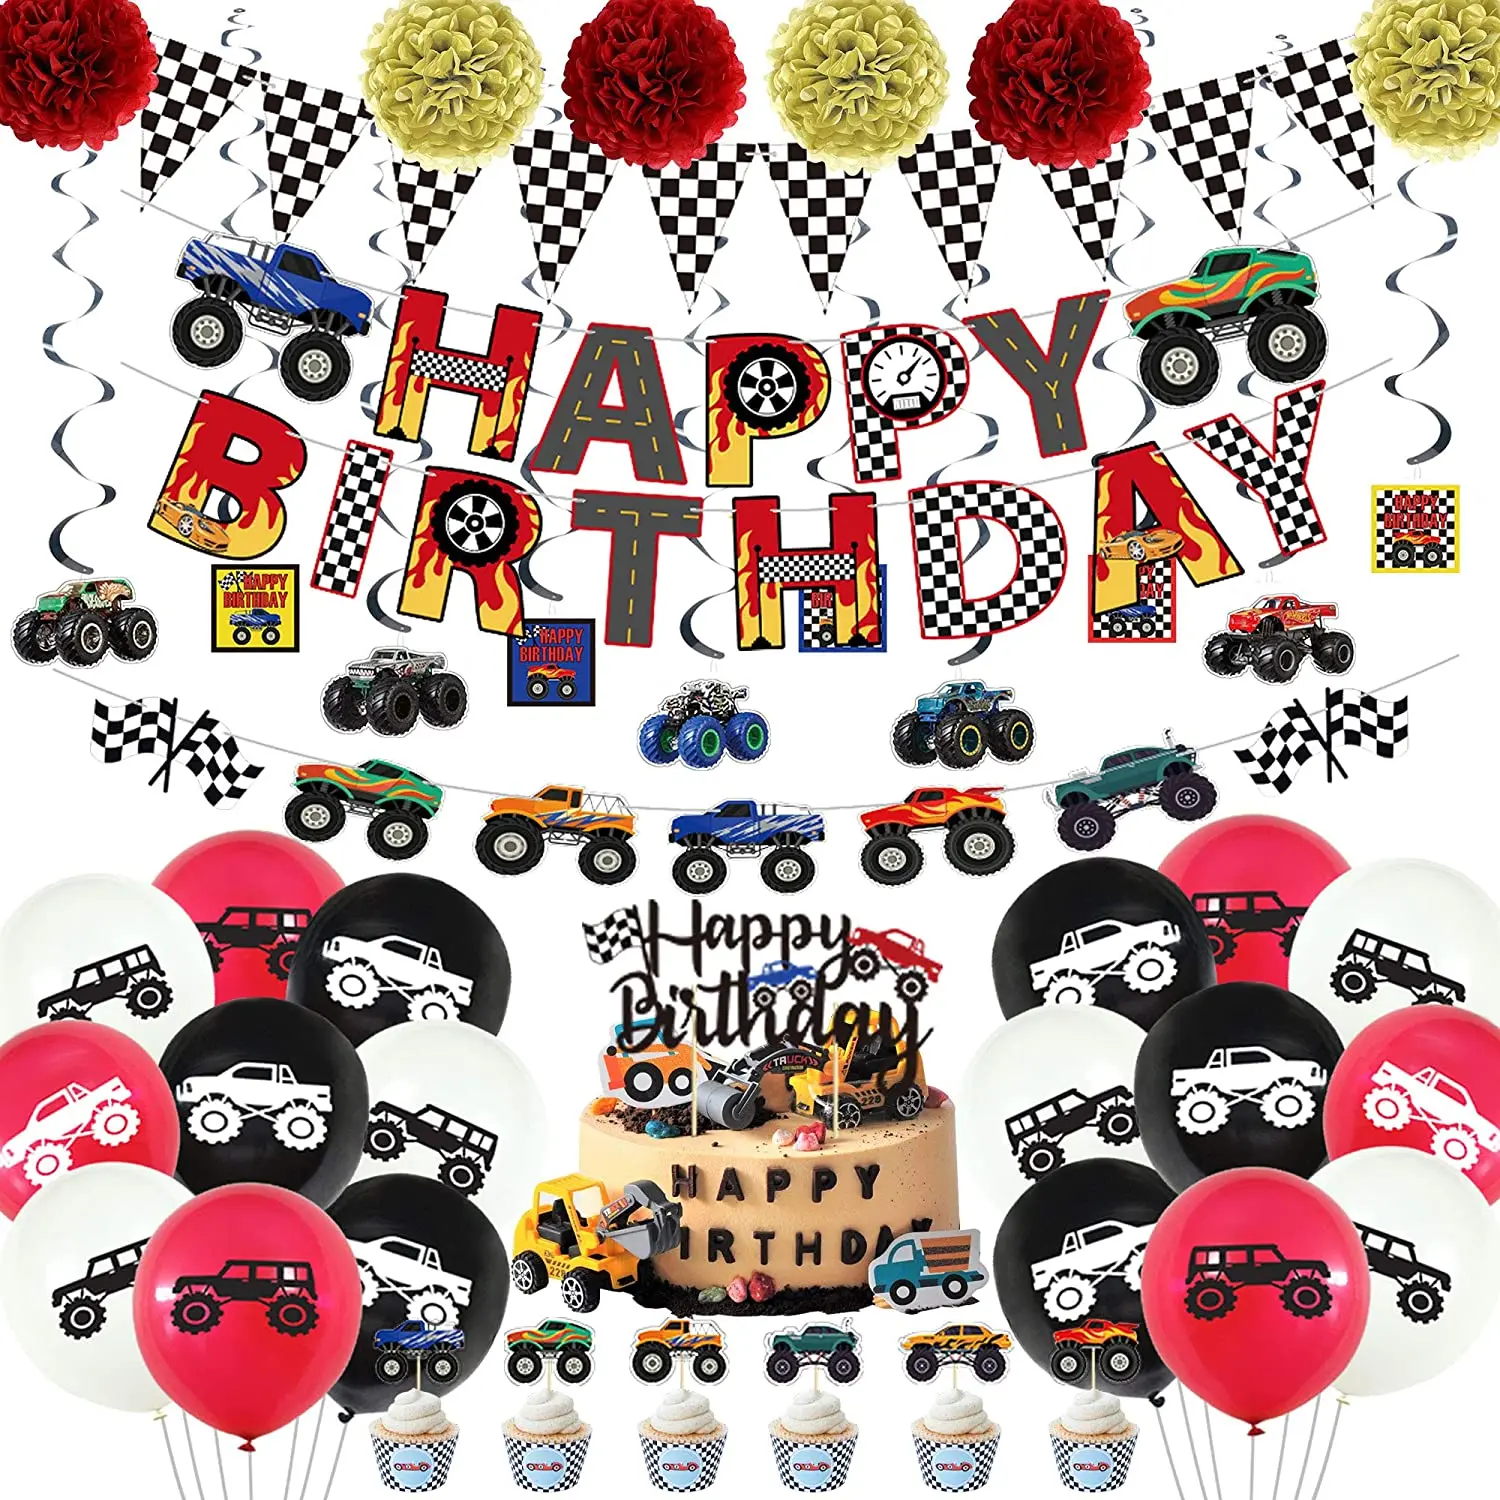 54 piezas de suministros para fiesta temática de camión monstruo, incluye pancartas de feliz cumpleaños, decoraciones de flores de papel hechas a mano y globos de látex